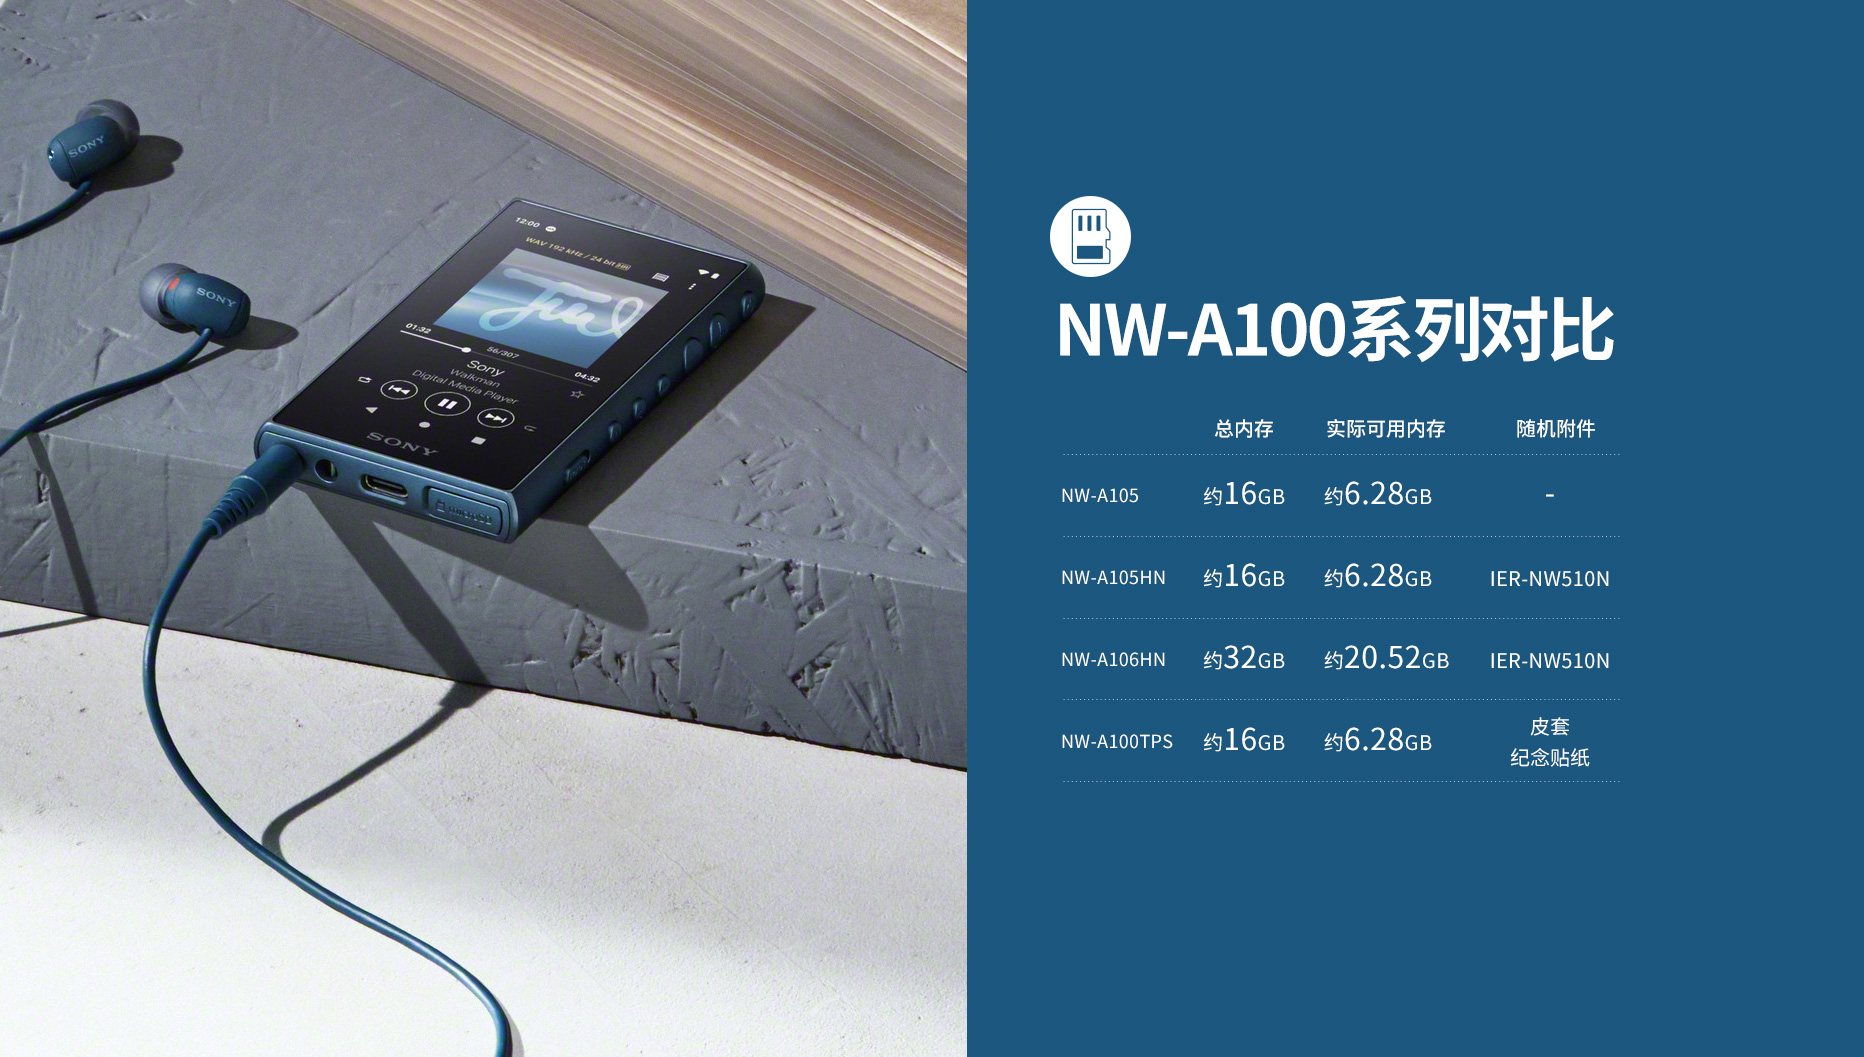 NW-A100系列对比